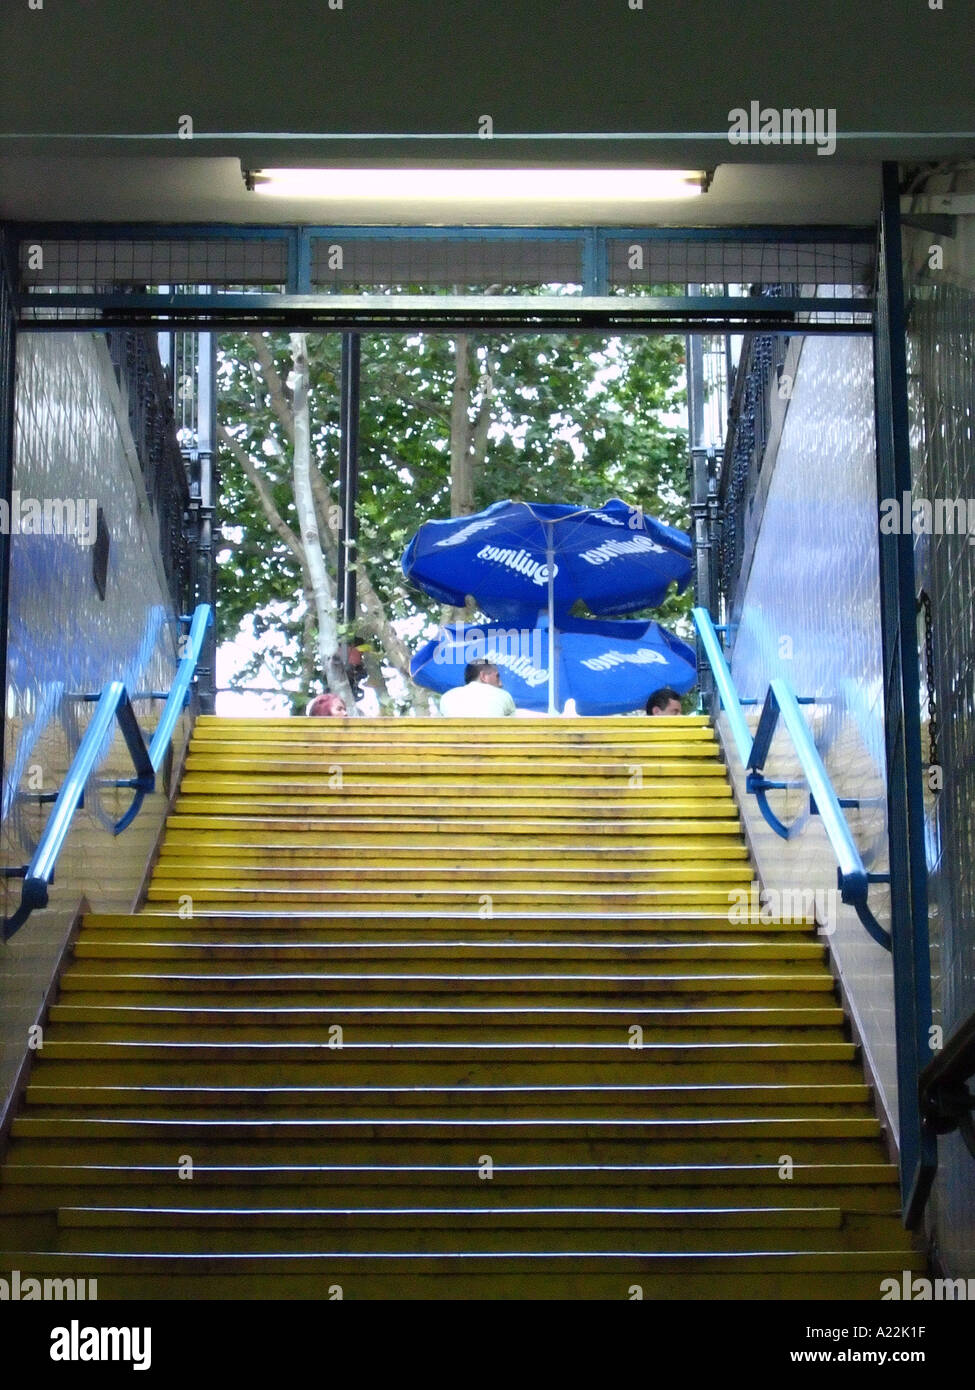 Escaliers menant à subte metro Buenos Aires Argentine Amérique du Sud Amérique latine Banque D'Images